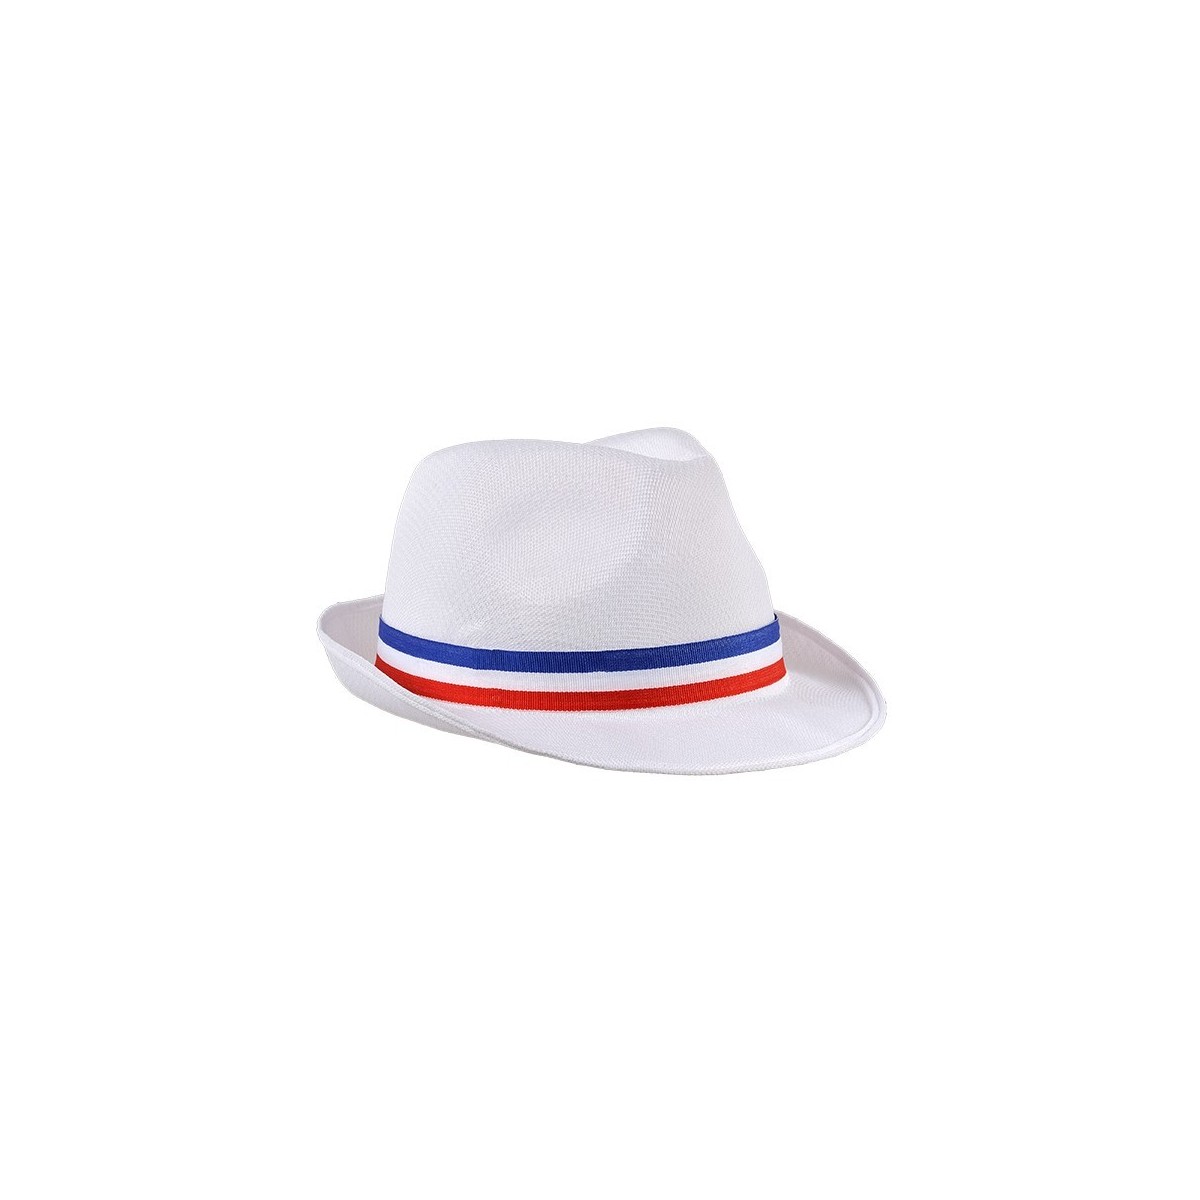 Chapeau Borsalino blanc  France tricolore